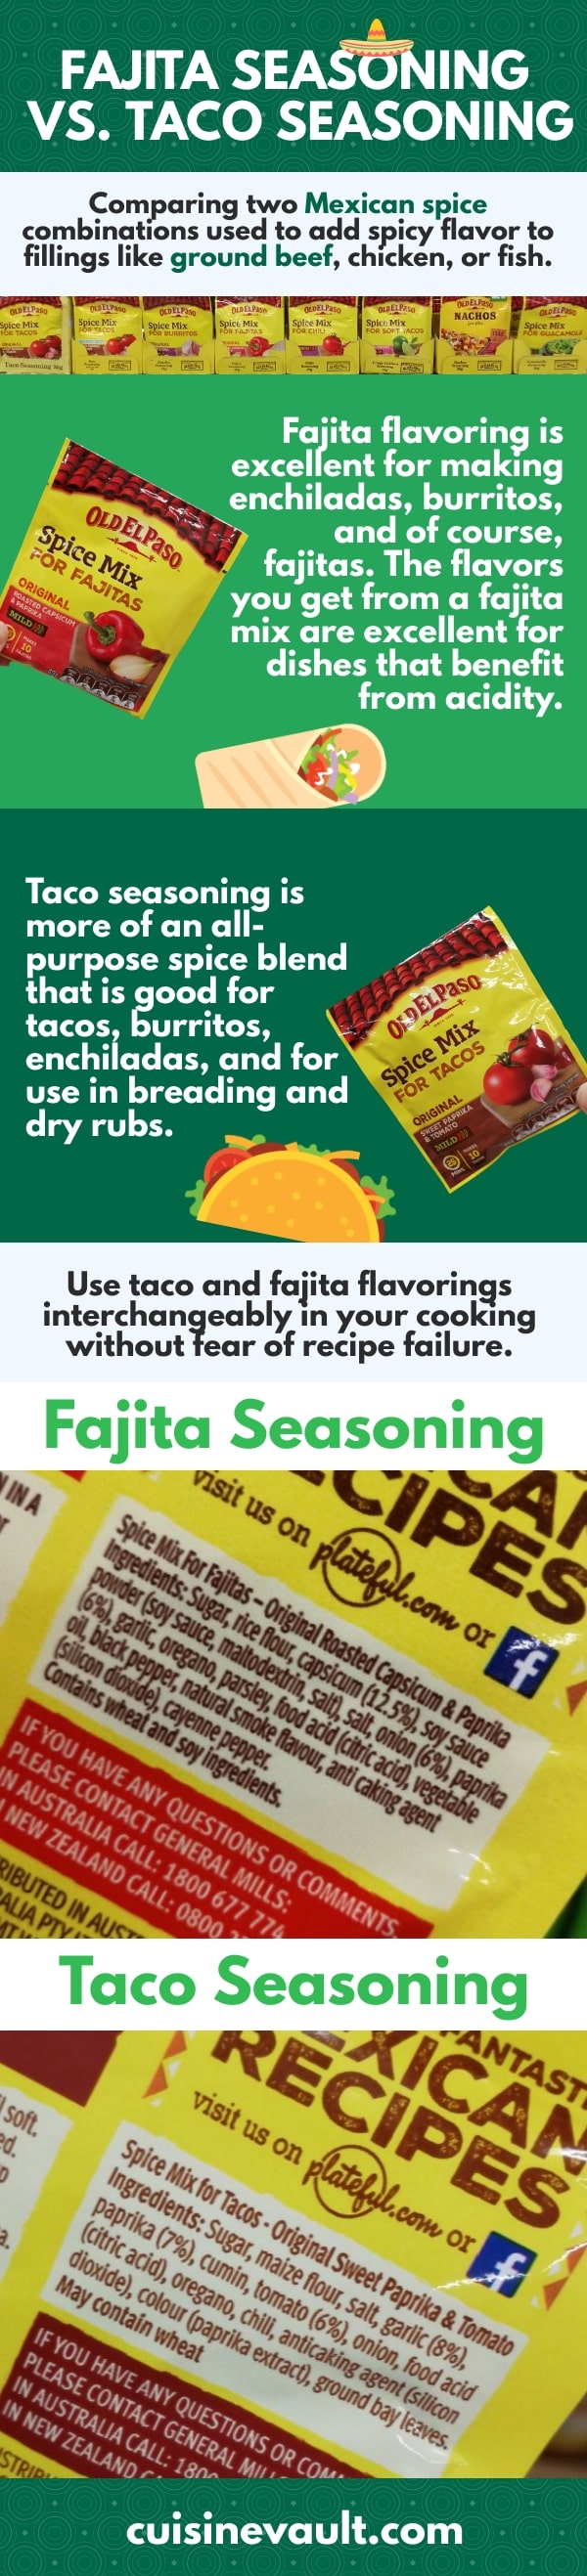 Fajita Seasoning Vs Taco Seasoning Infographic